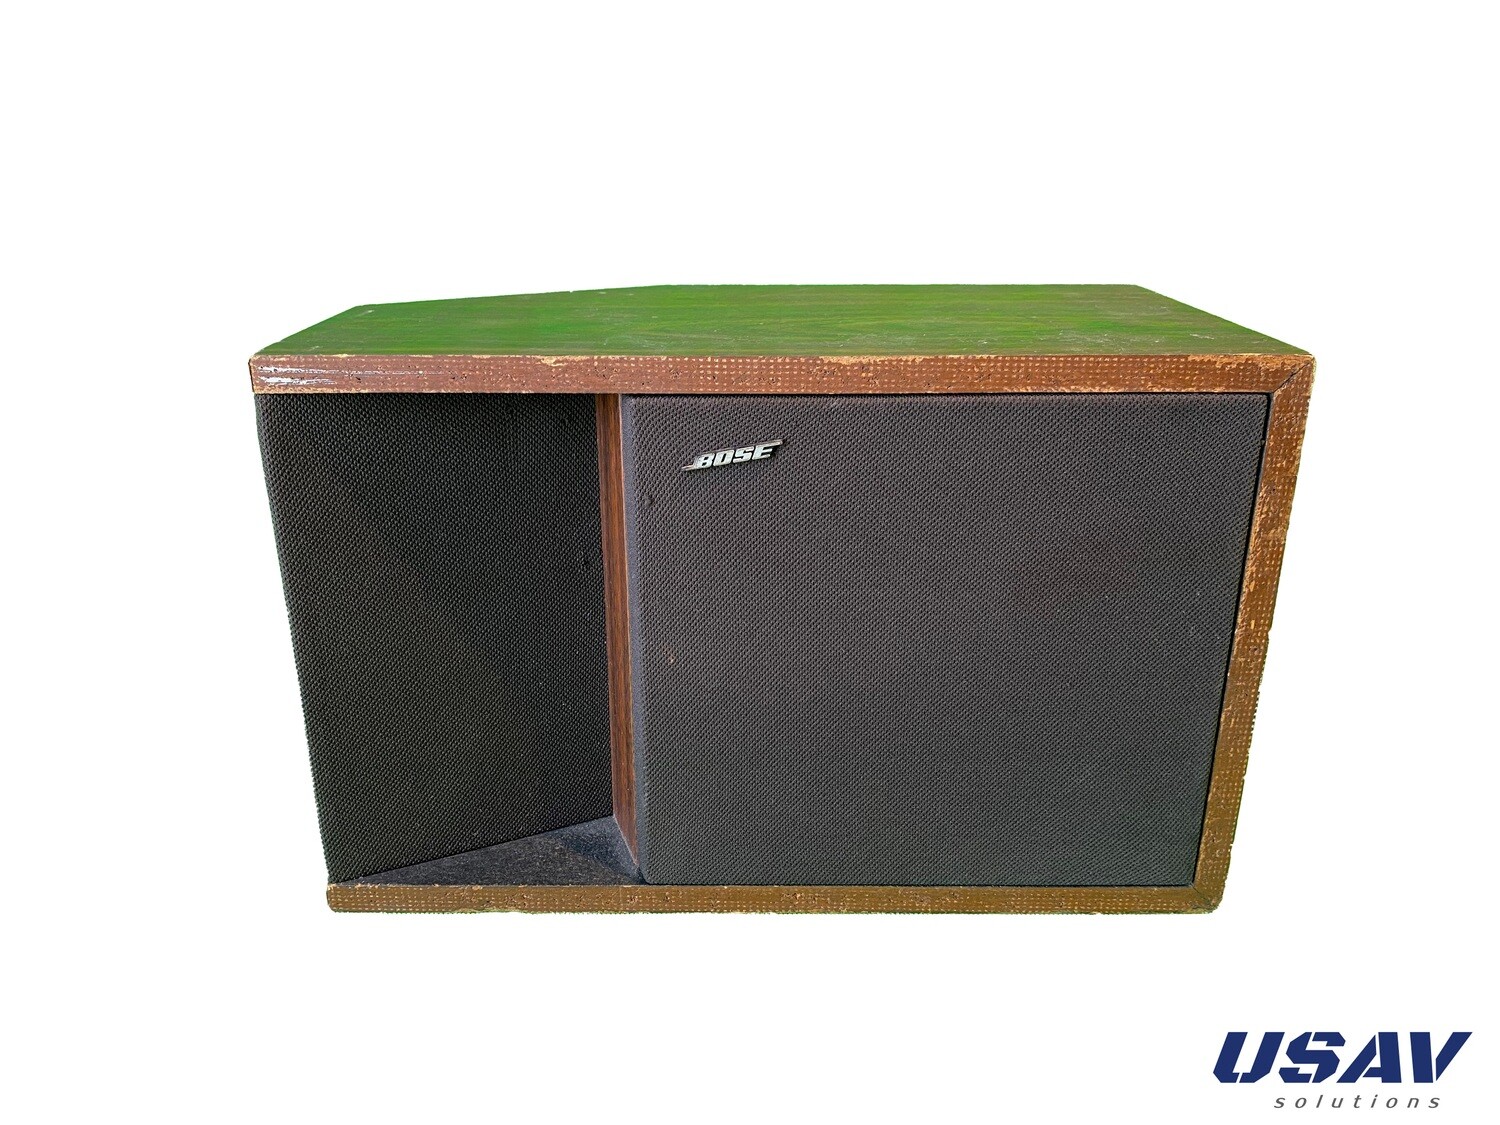 Bose 201 Series II loudspeaker (Single Right Speaker)